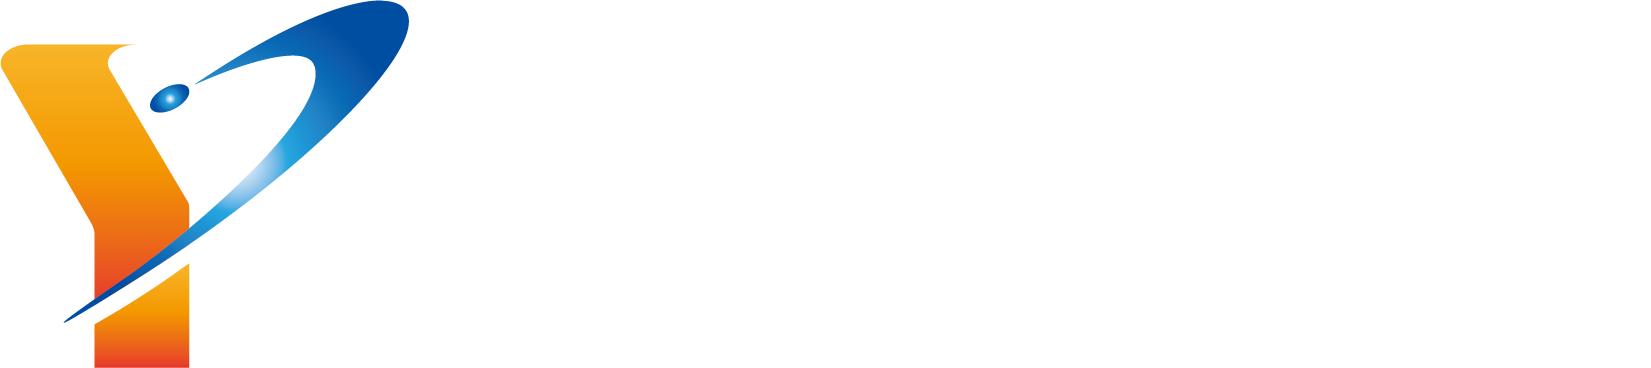 安田雄輝 Official Website